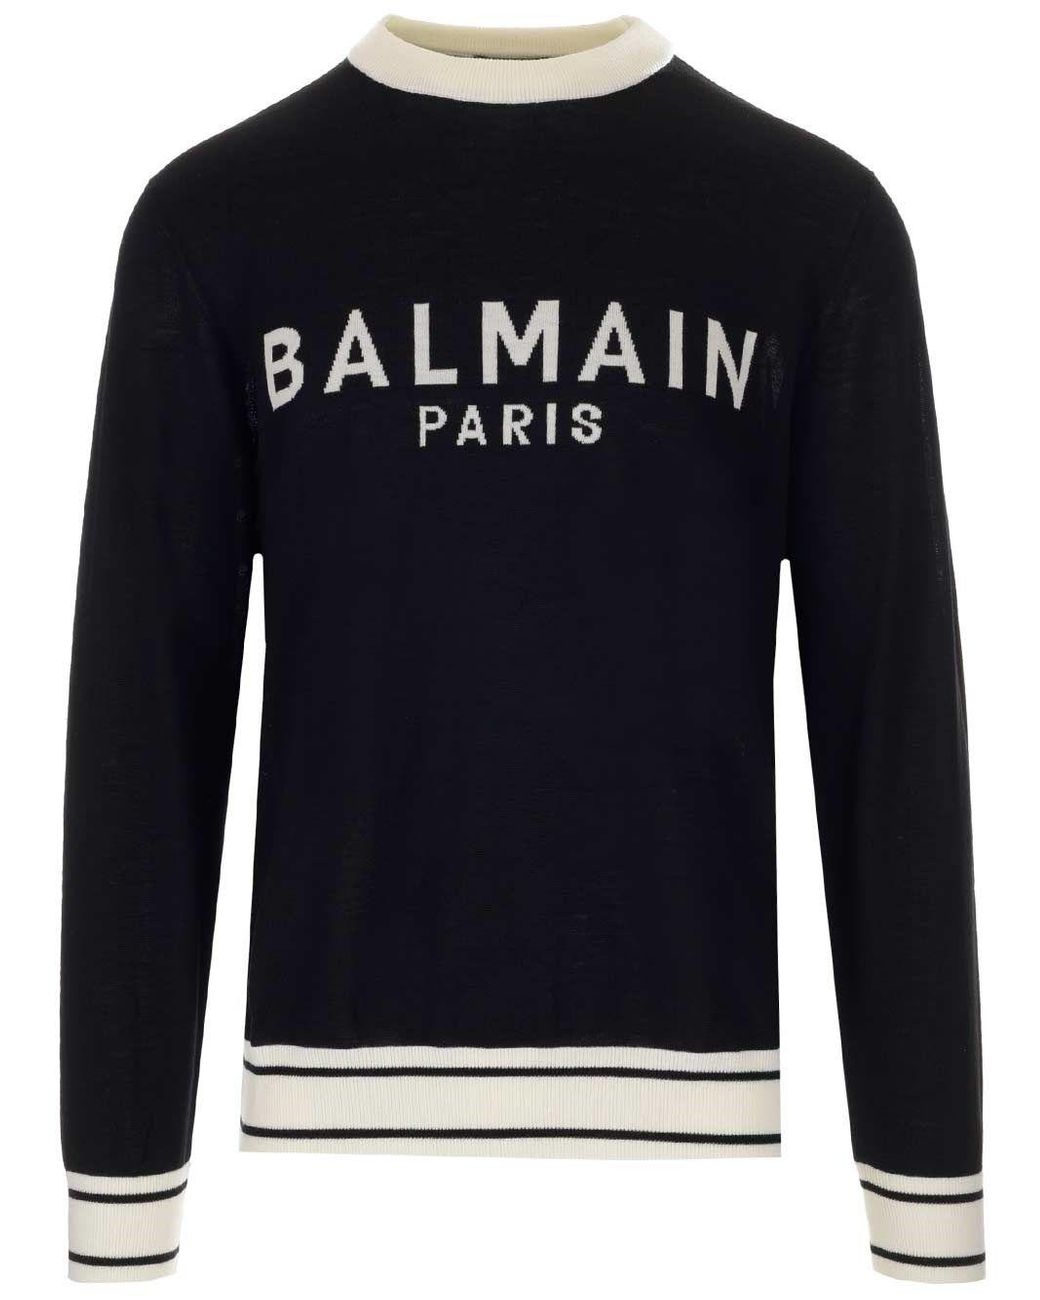 Balmain Wool Sweater in Black for Men - Lyst